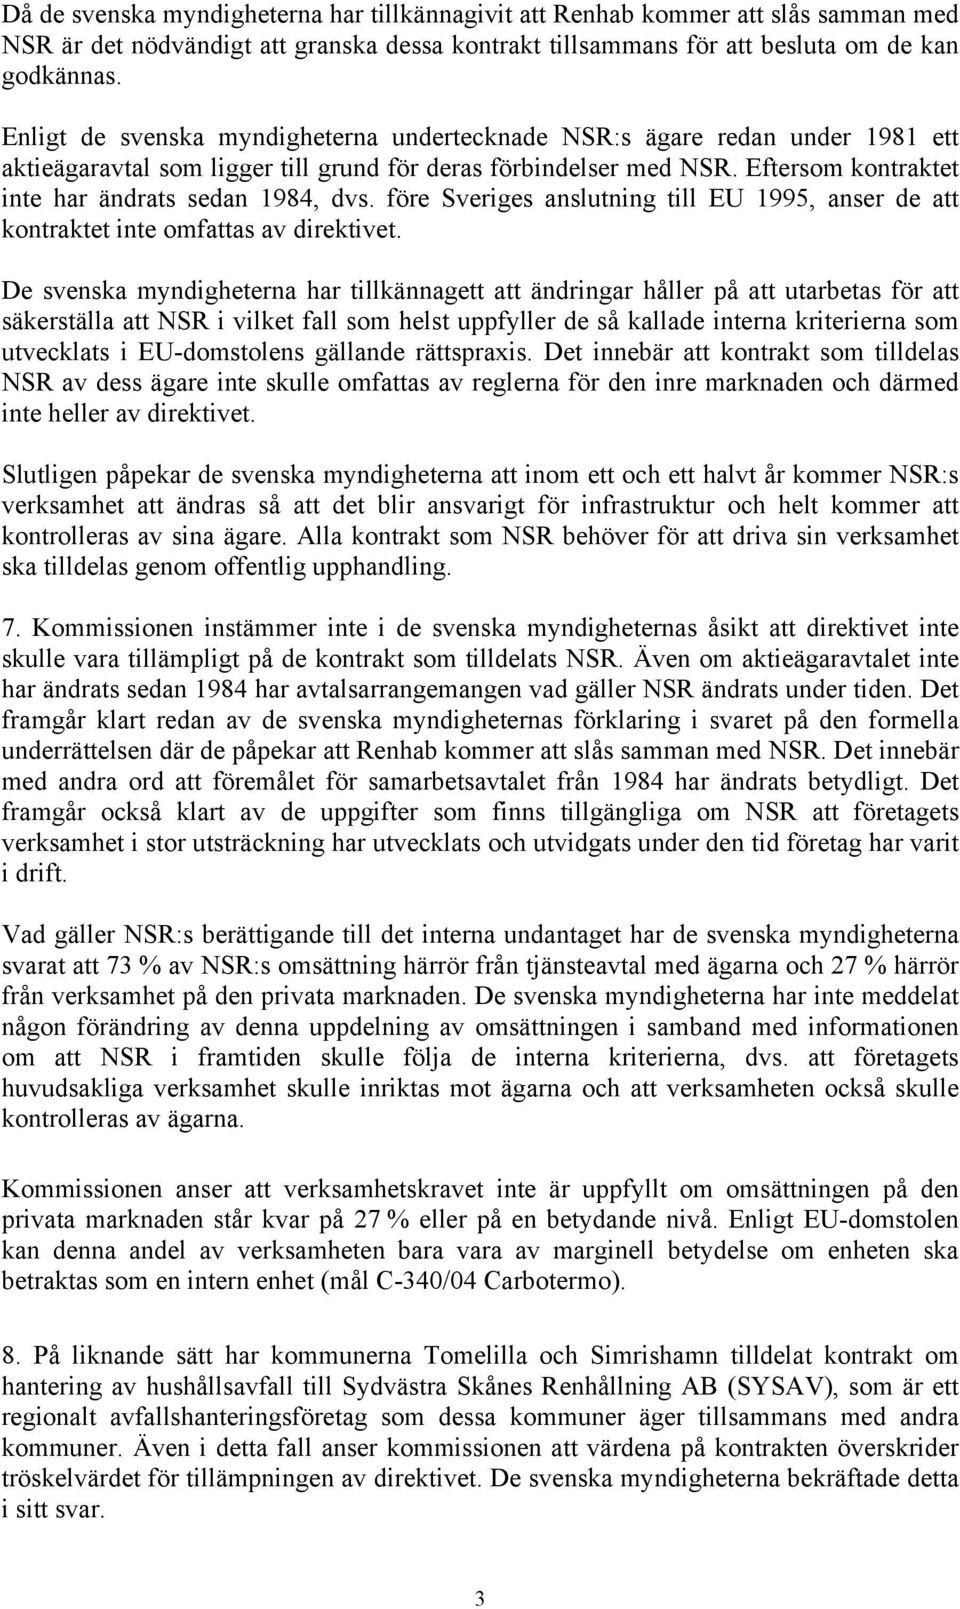 Eftersom kontraktet inte har ändrats sedan 1984, dvs. före Sveriges anslutning till EU 1995, anser de att kontraktet inte omfattas av direktivet.